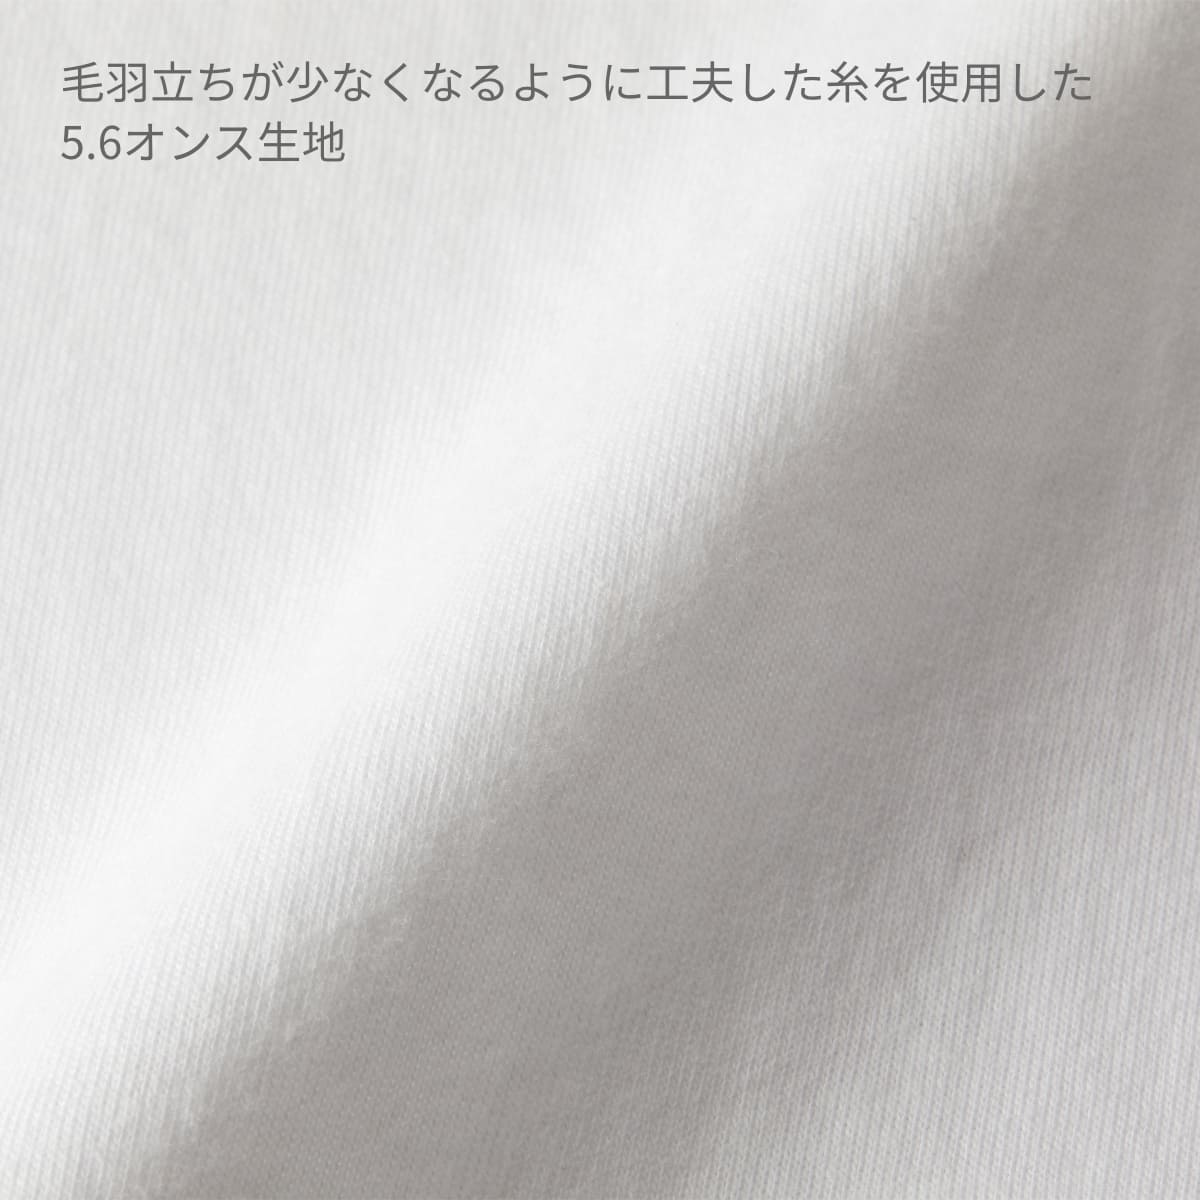 5.6オンス ハイクオリティ Tシャツ（ティア アウェイ タグ） | メンズ | 1枚 | 5001-05 | ホワイト